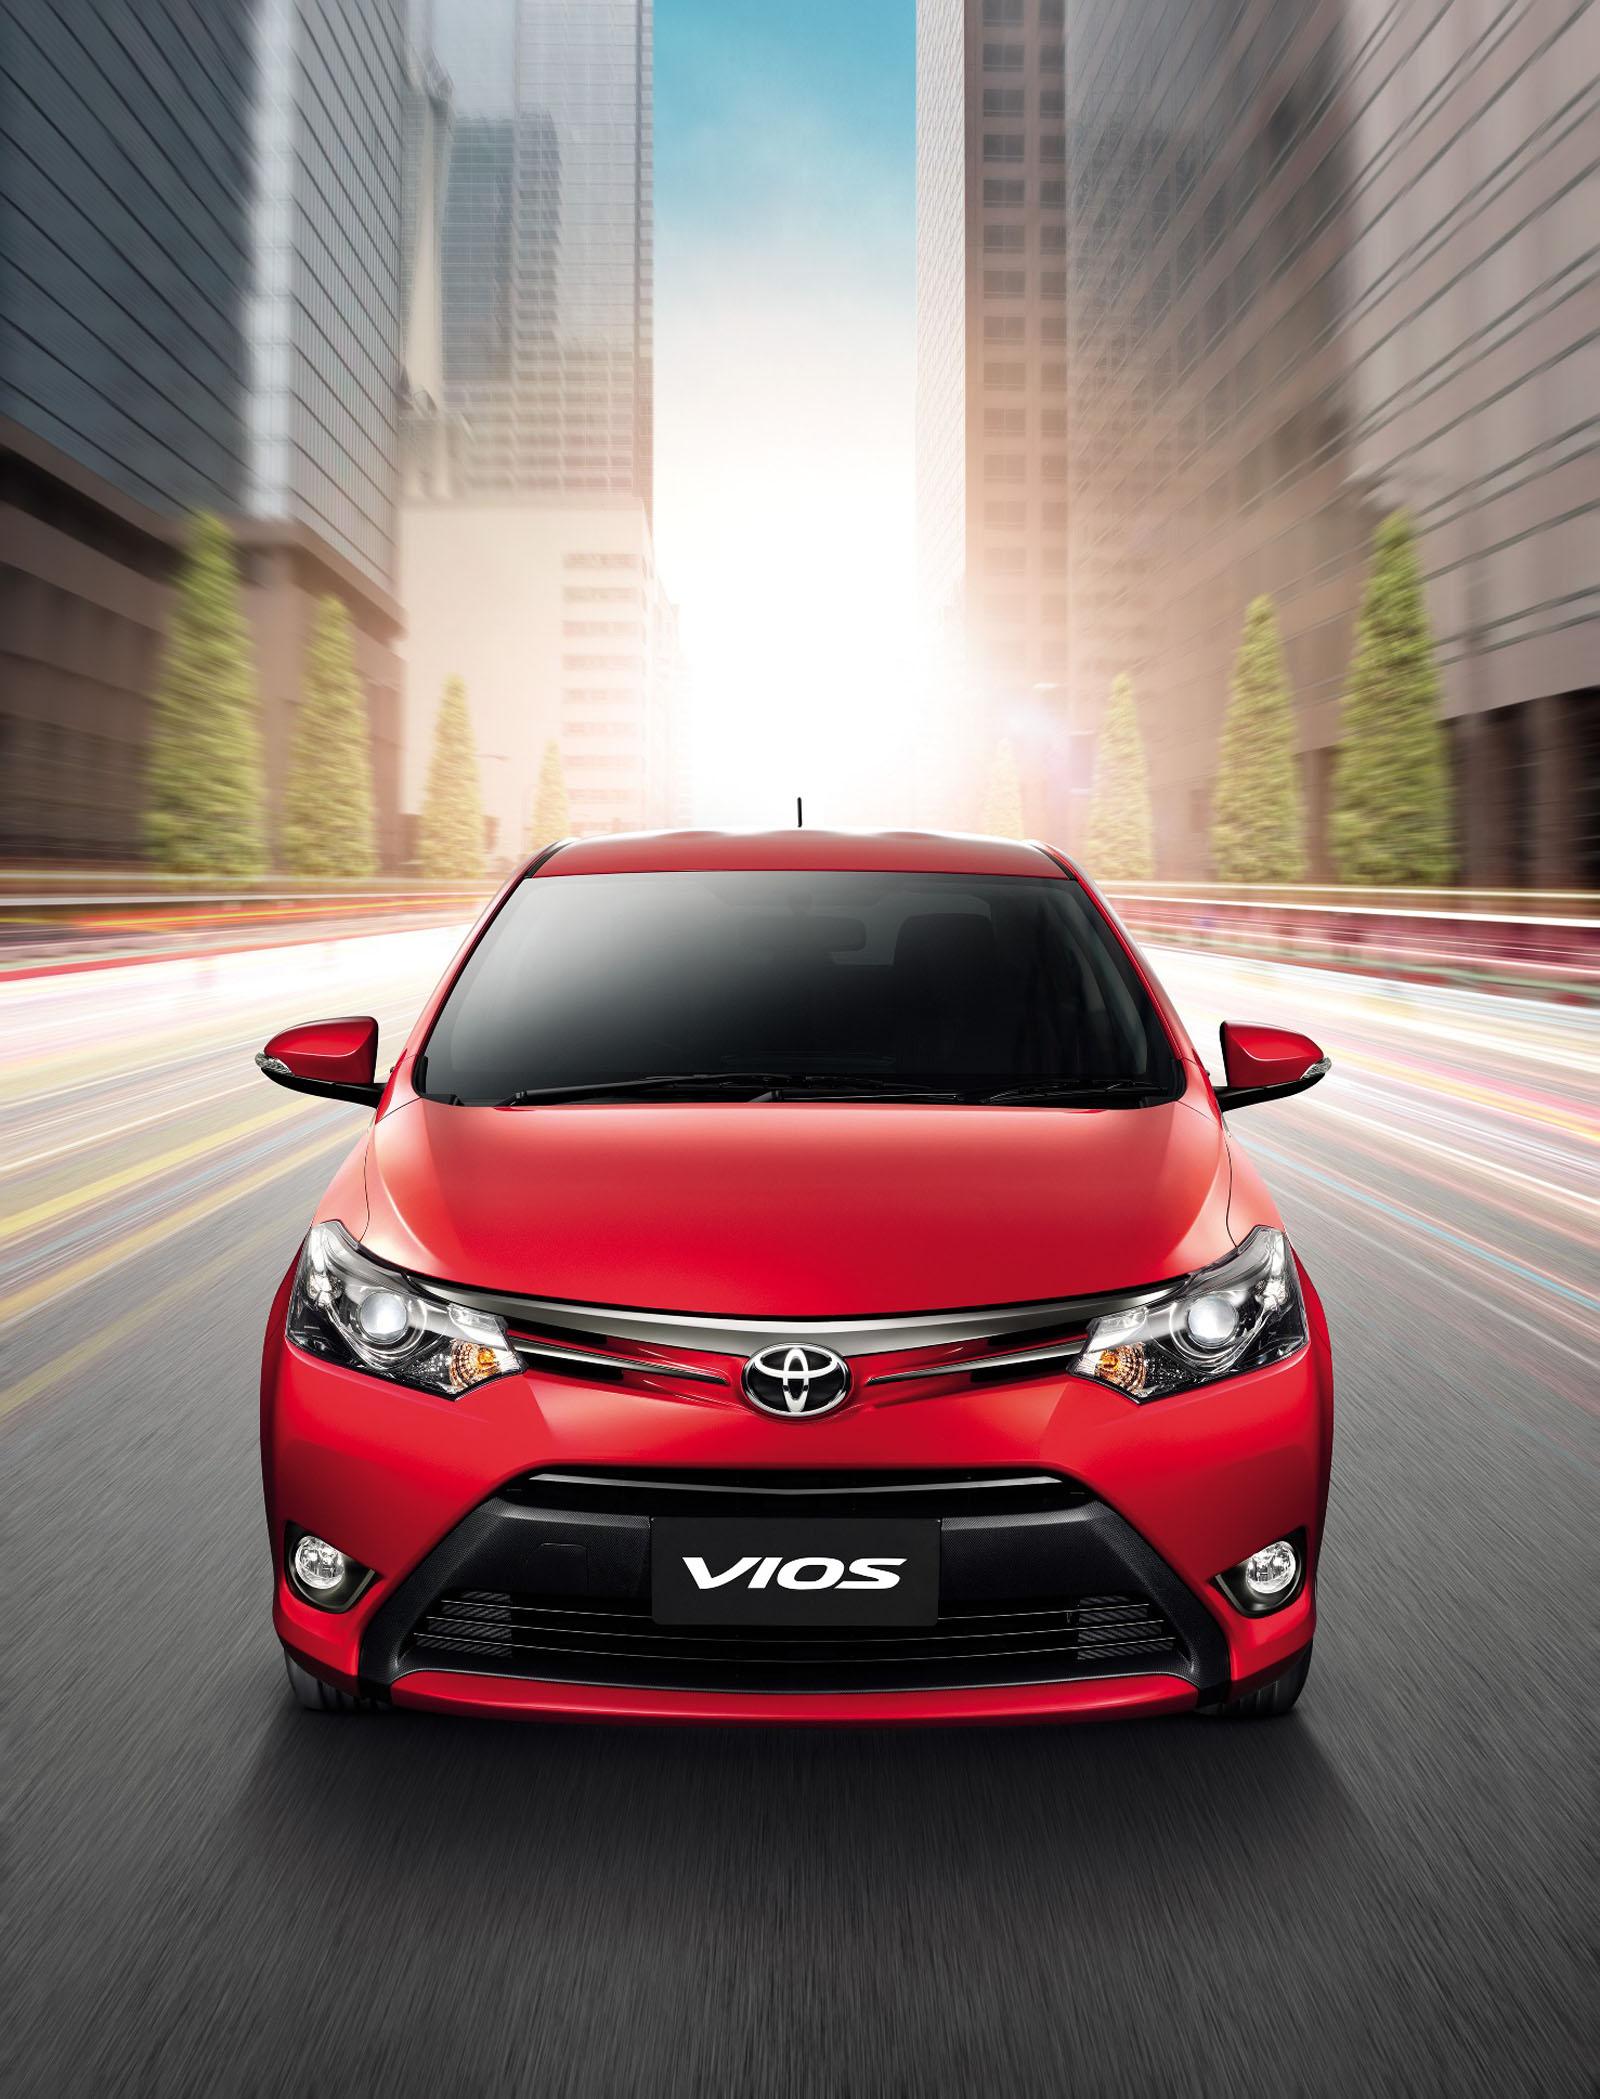 Покажи машину авто. Тойота Виос 2015. Toyota Vios 2014. Тойота Виос 3. Toyota Vios 2017.